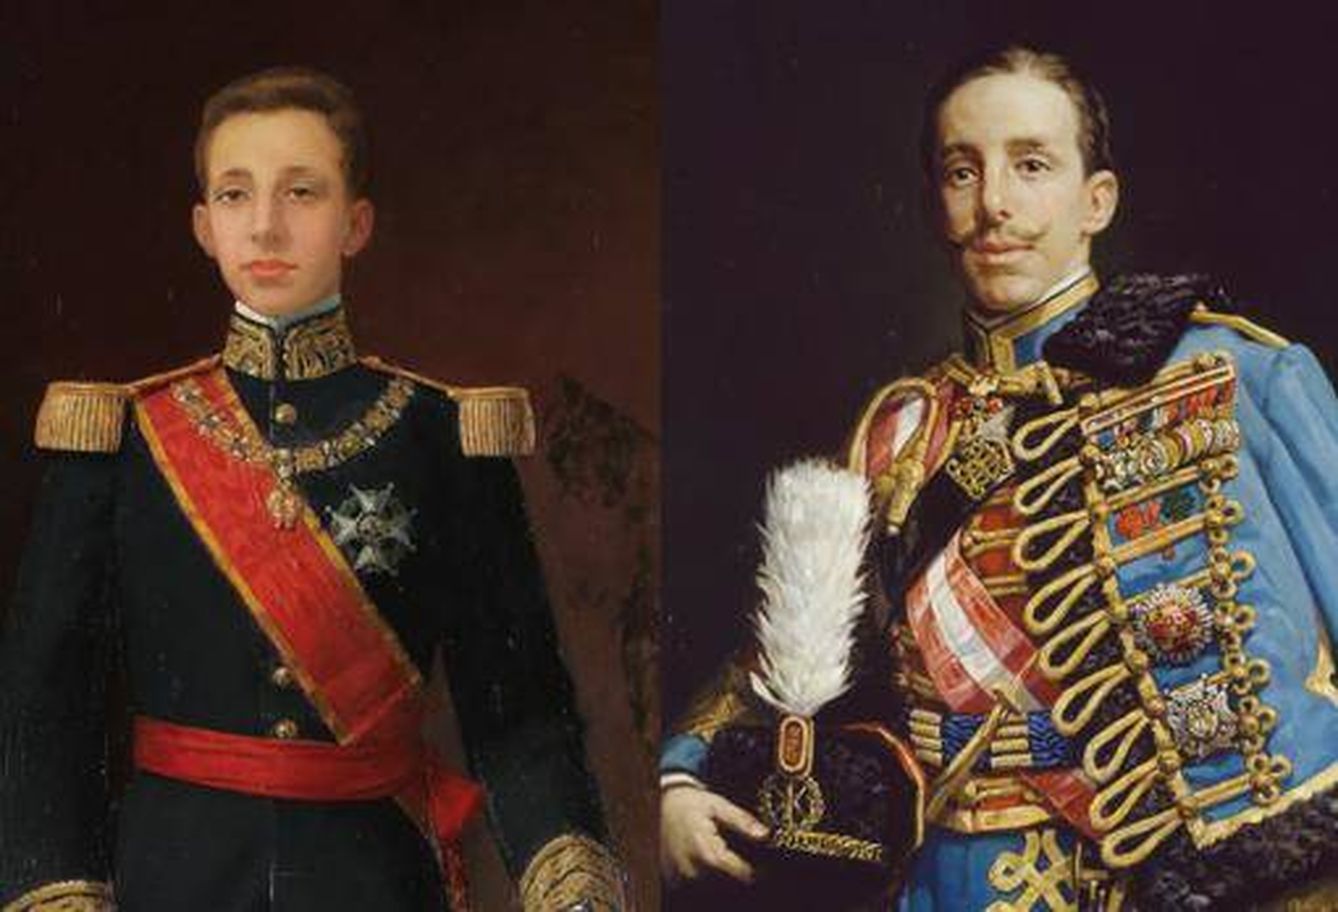 'Alfonso XIII' de Juan Antonio Benlliure y Gil (1902) y 'El rey Alfonso XIII', de Román Navarro García de Vinuesa (1912)